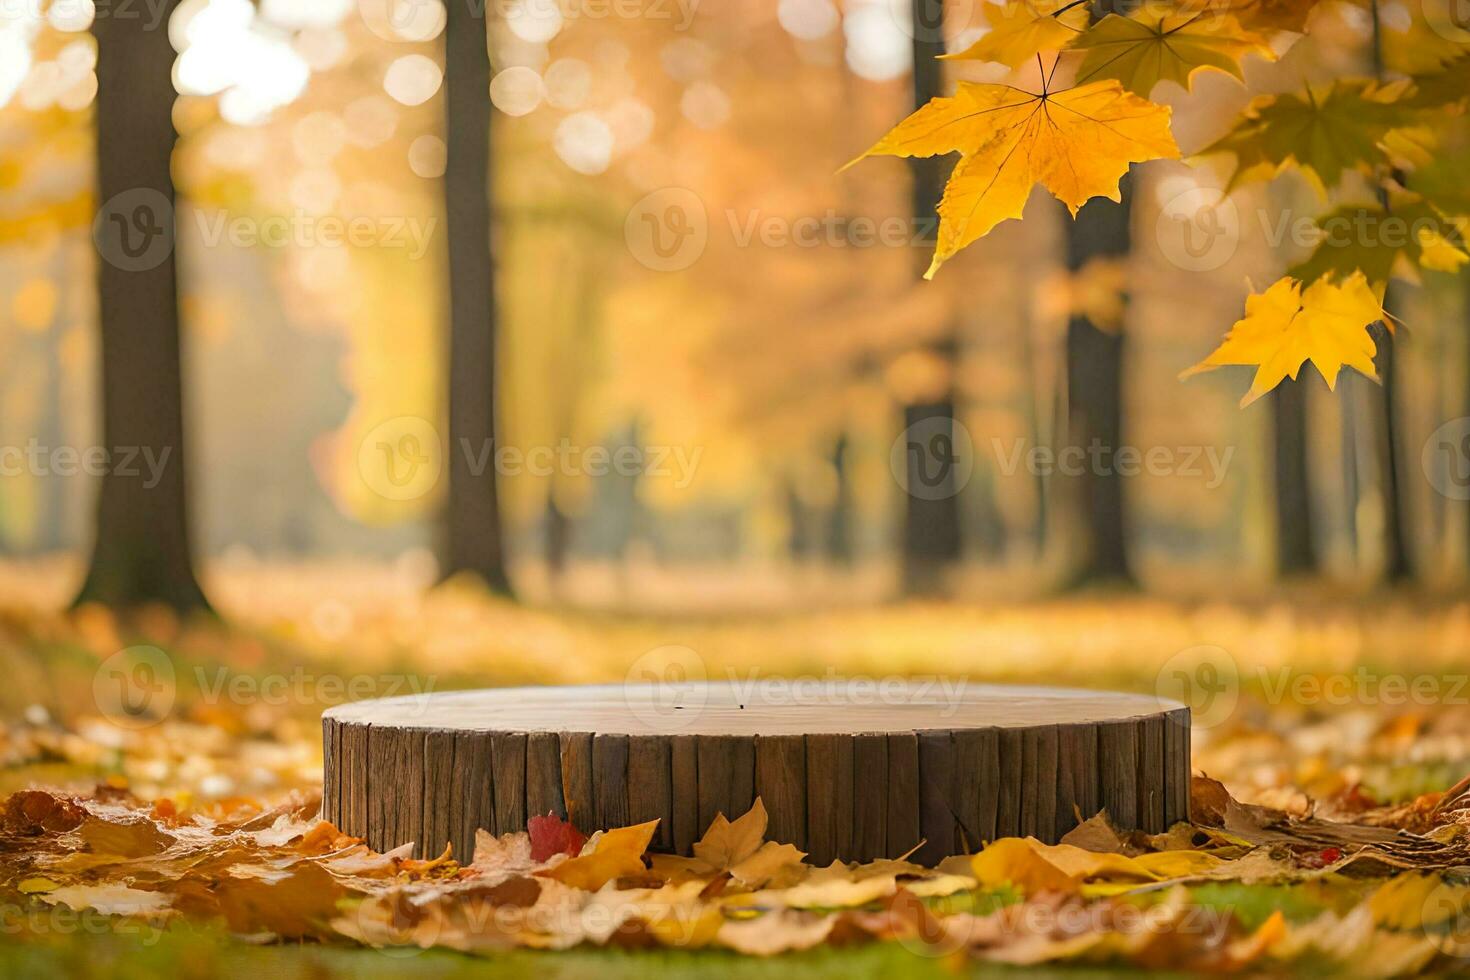 een rustiek houten Product voetstuk omringd door esdoorn- bladeren in de herfst natuur landschap premade foto mockup achtergrond